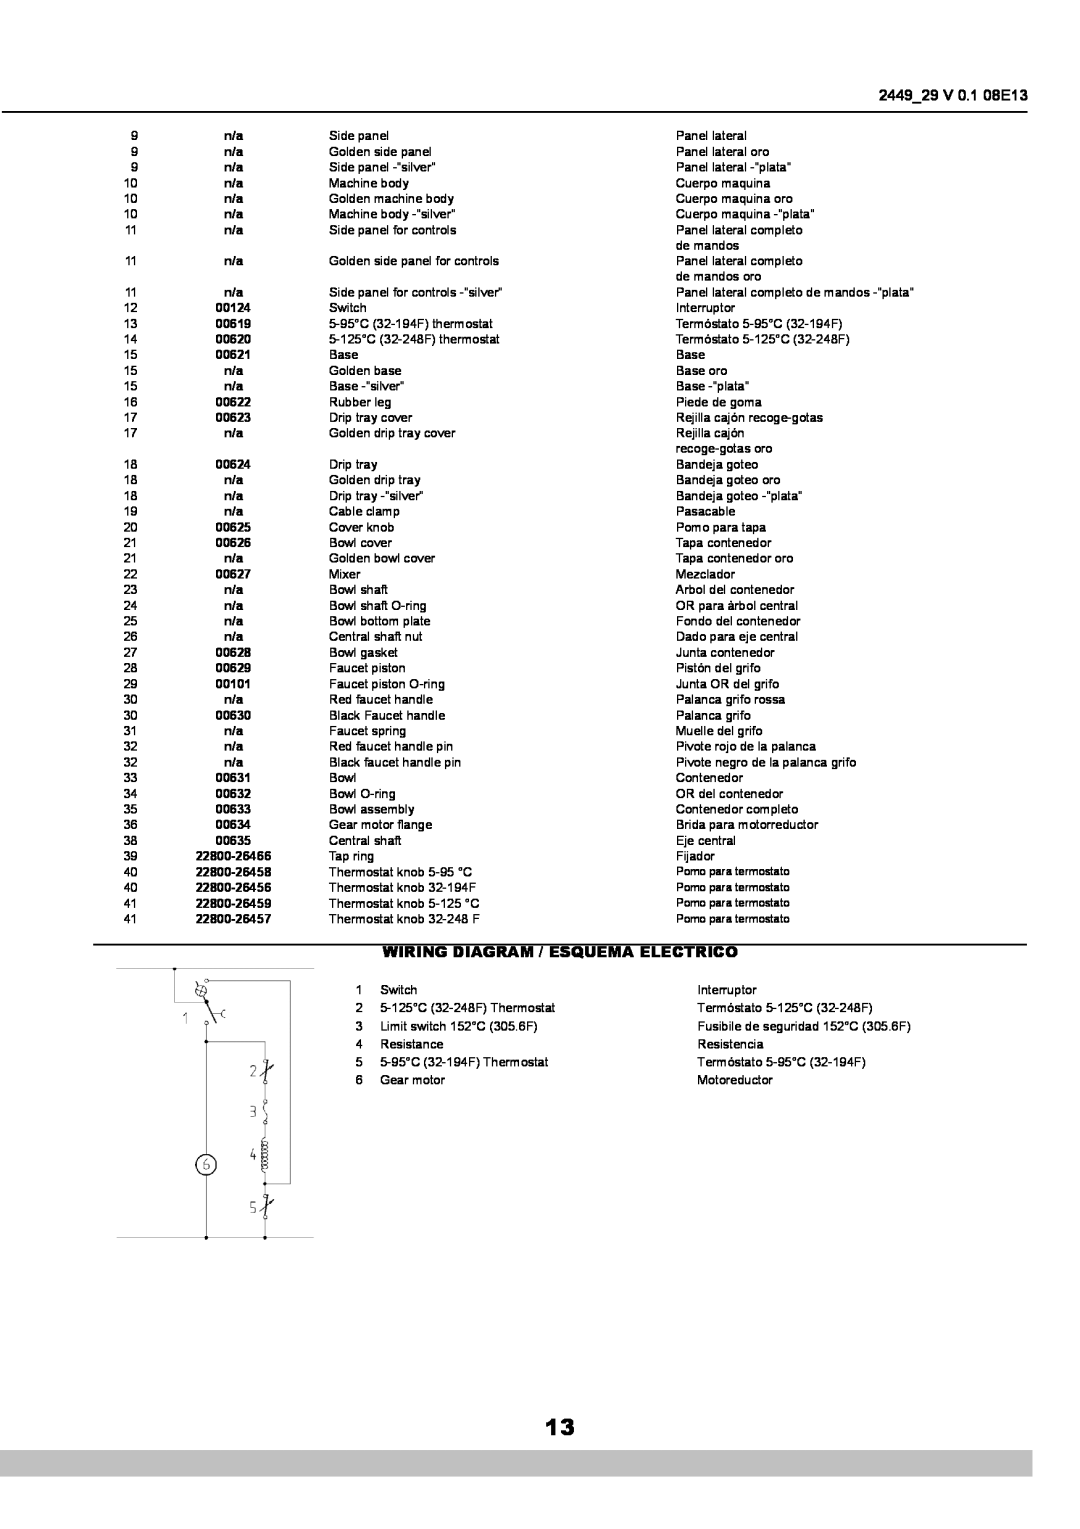 Cecilware NS18A manual 2449 29 V 0.1 08E13, Wiring Diagram / Esquema Electrico 